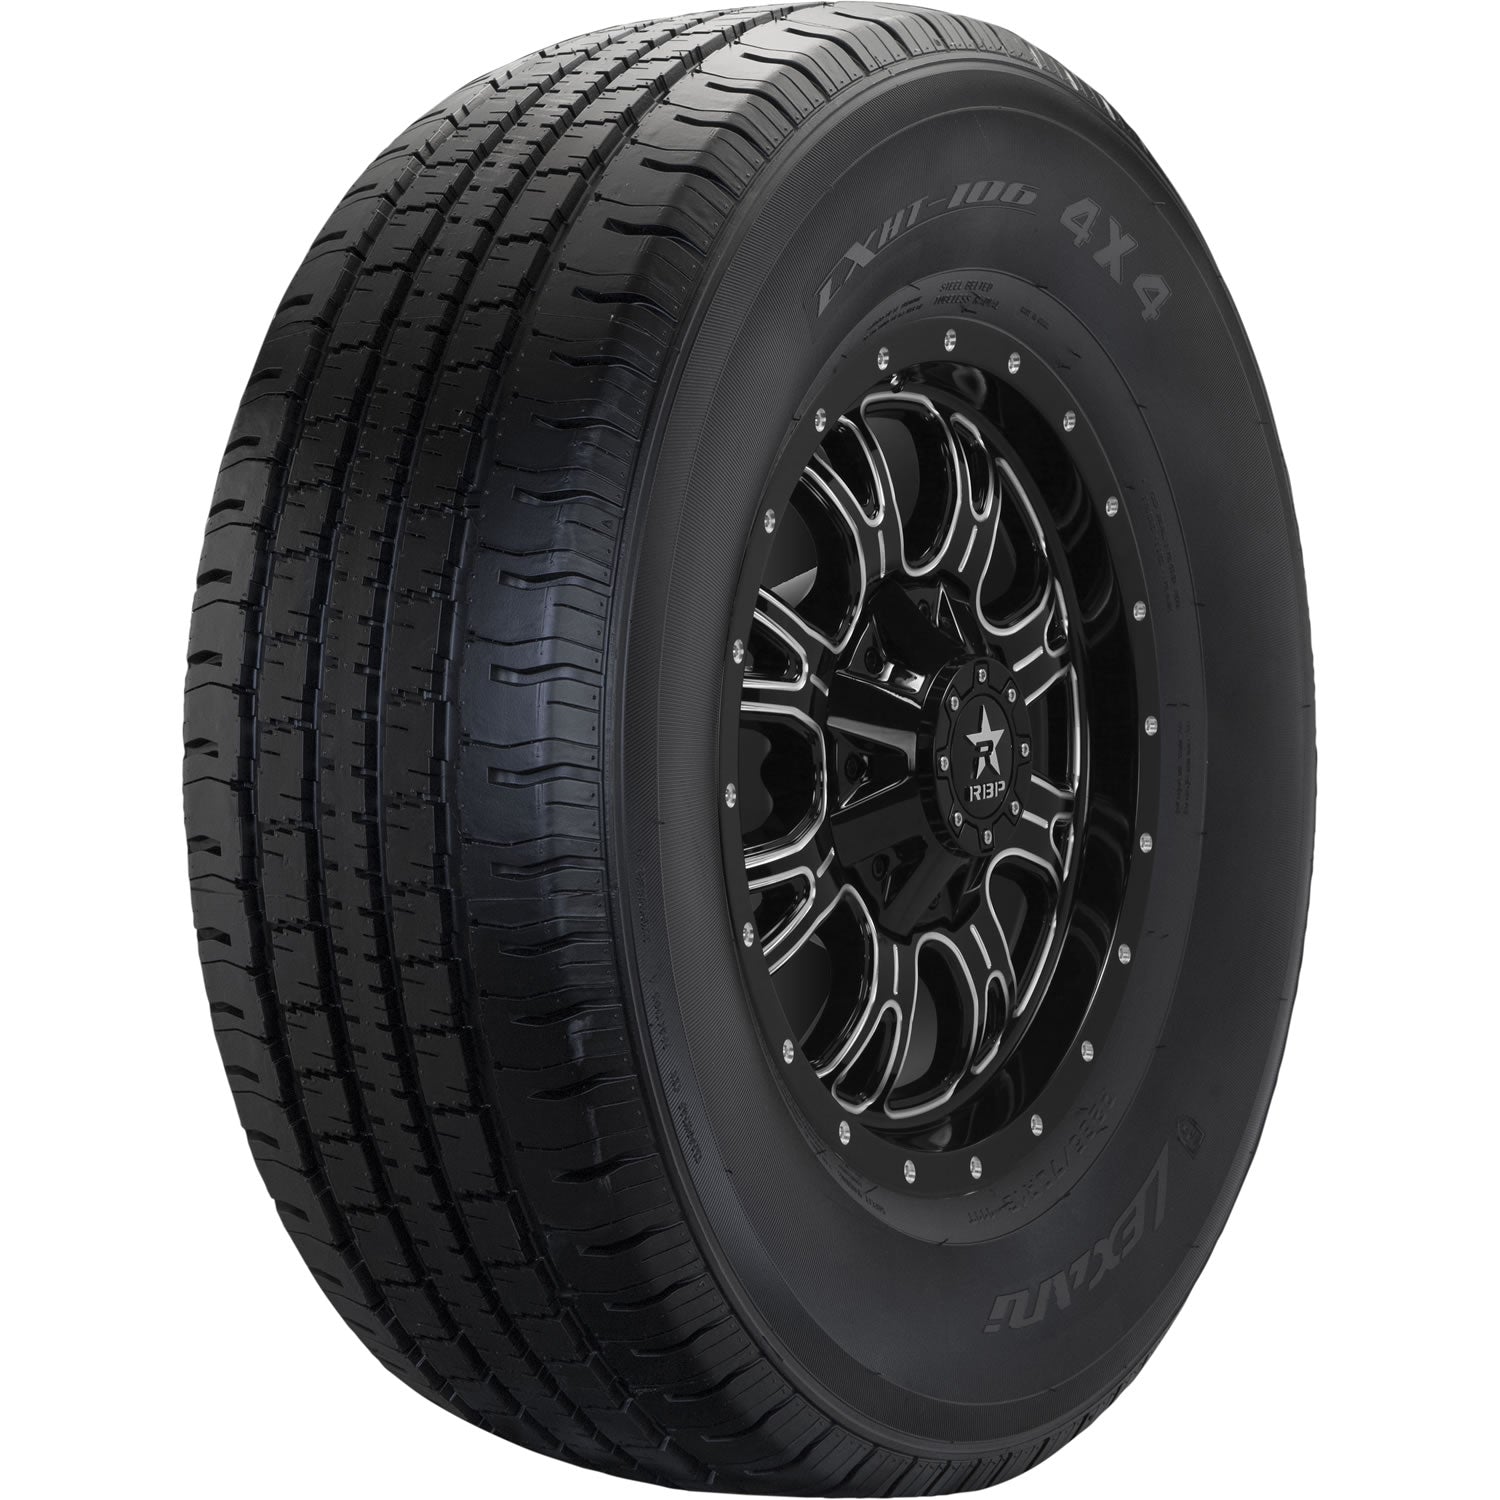 LEXANI LXHT-106 P225/70R16 (28.4X9R 16) Tires